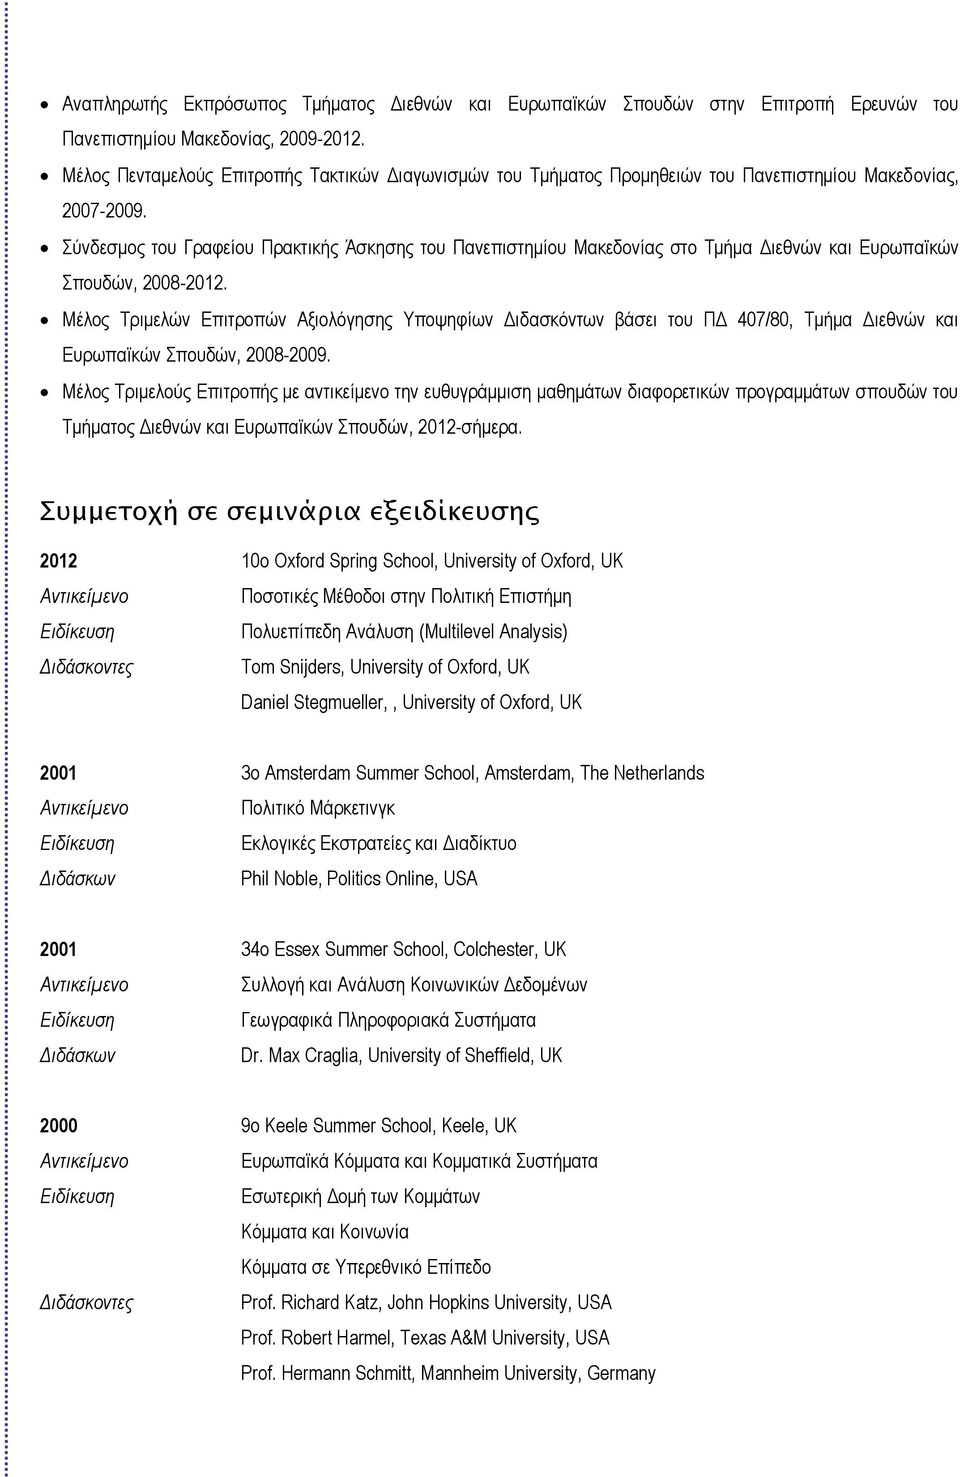 Σύνδεσμος του Γραφείου Πρακτικής Άσκησης του Πανεπιστημίου Μακεδονίας στο Τμήμα Διεθνών και Ευρωπαϊκών Σπουδών, 2008-2012.